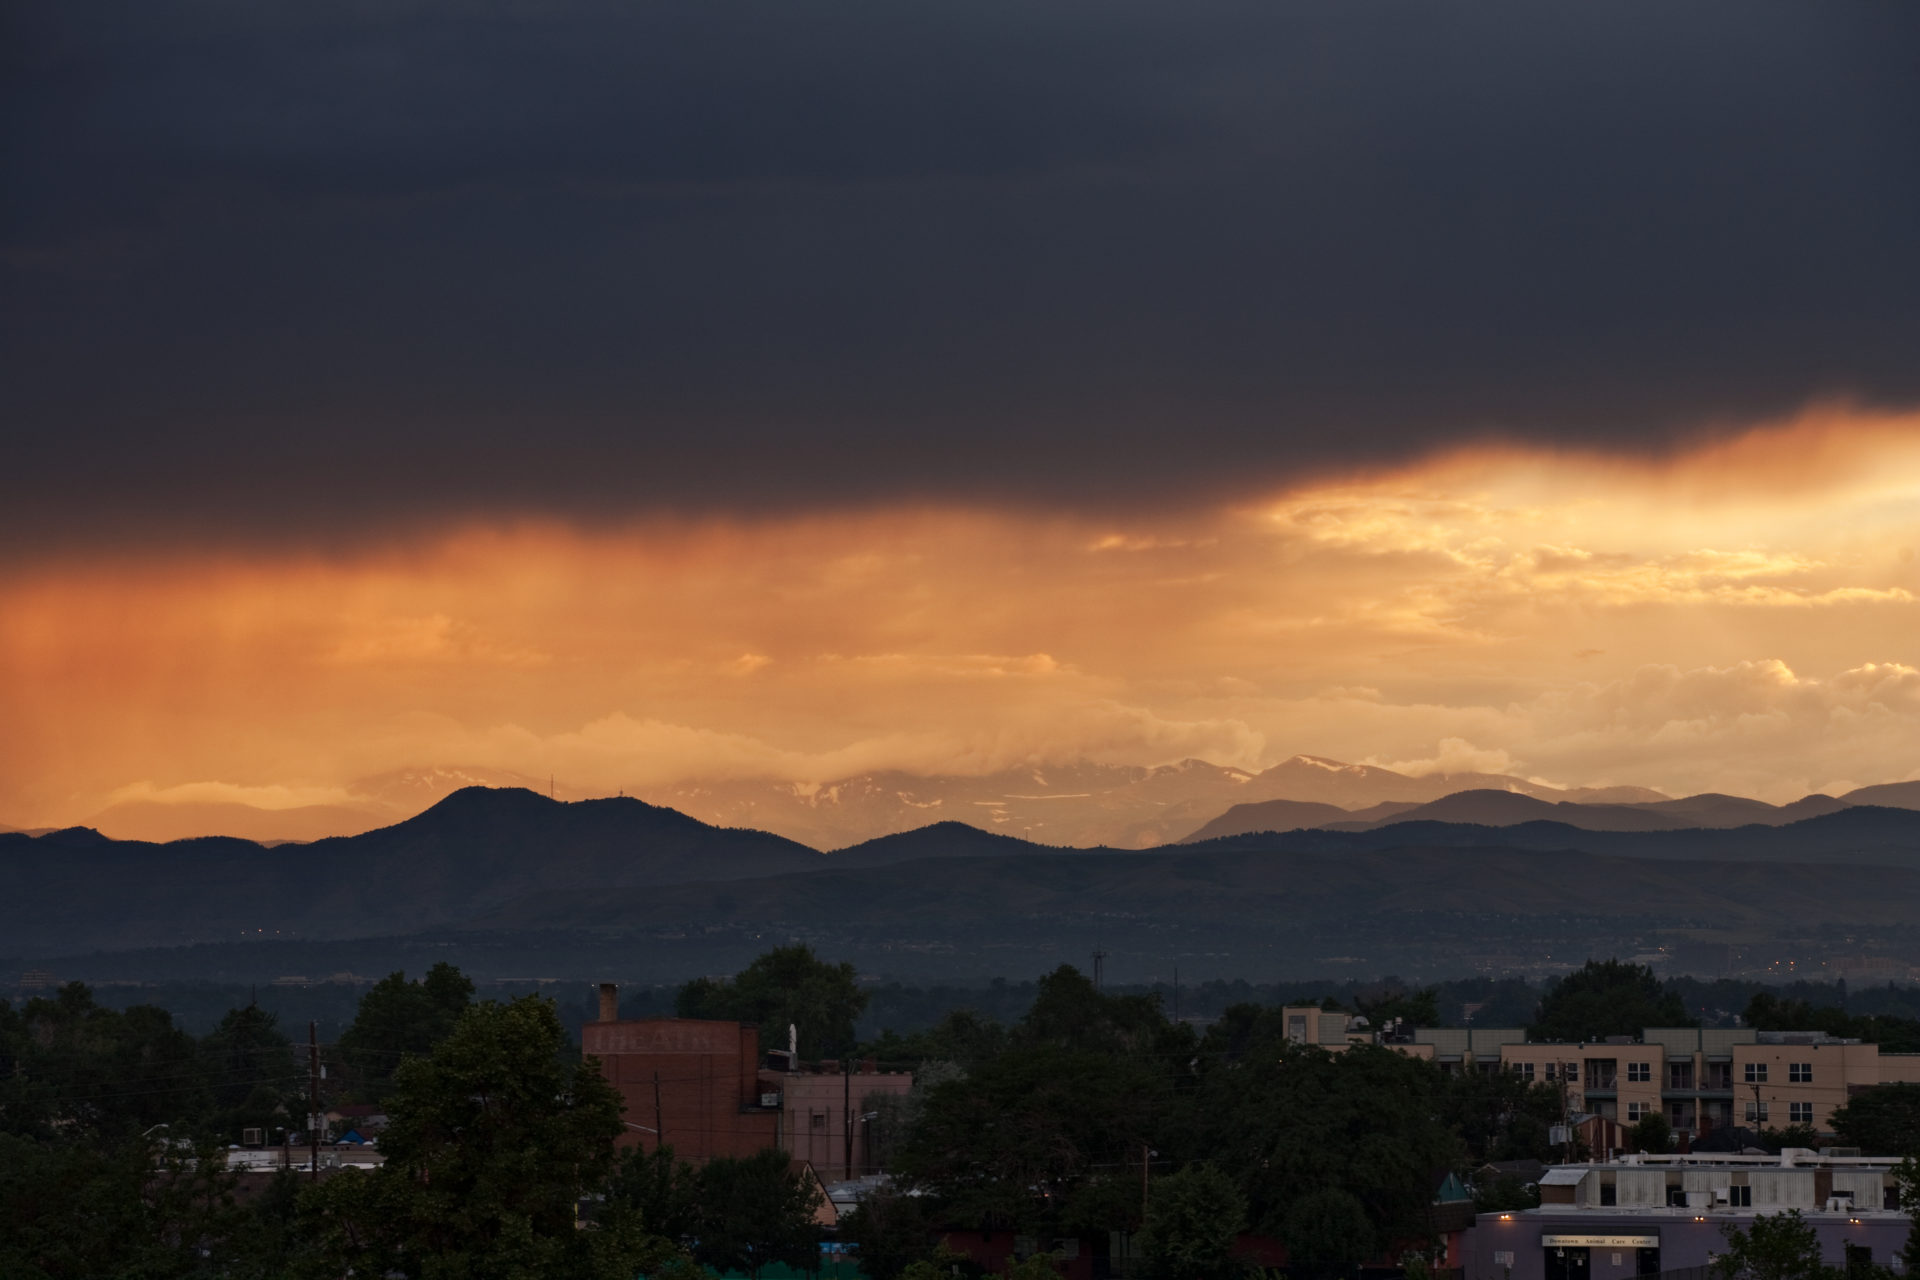 Mount Evans sunset - July 12, 2011